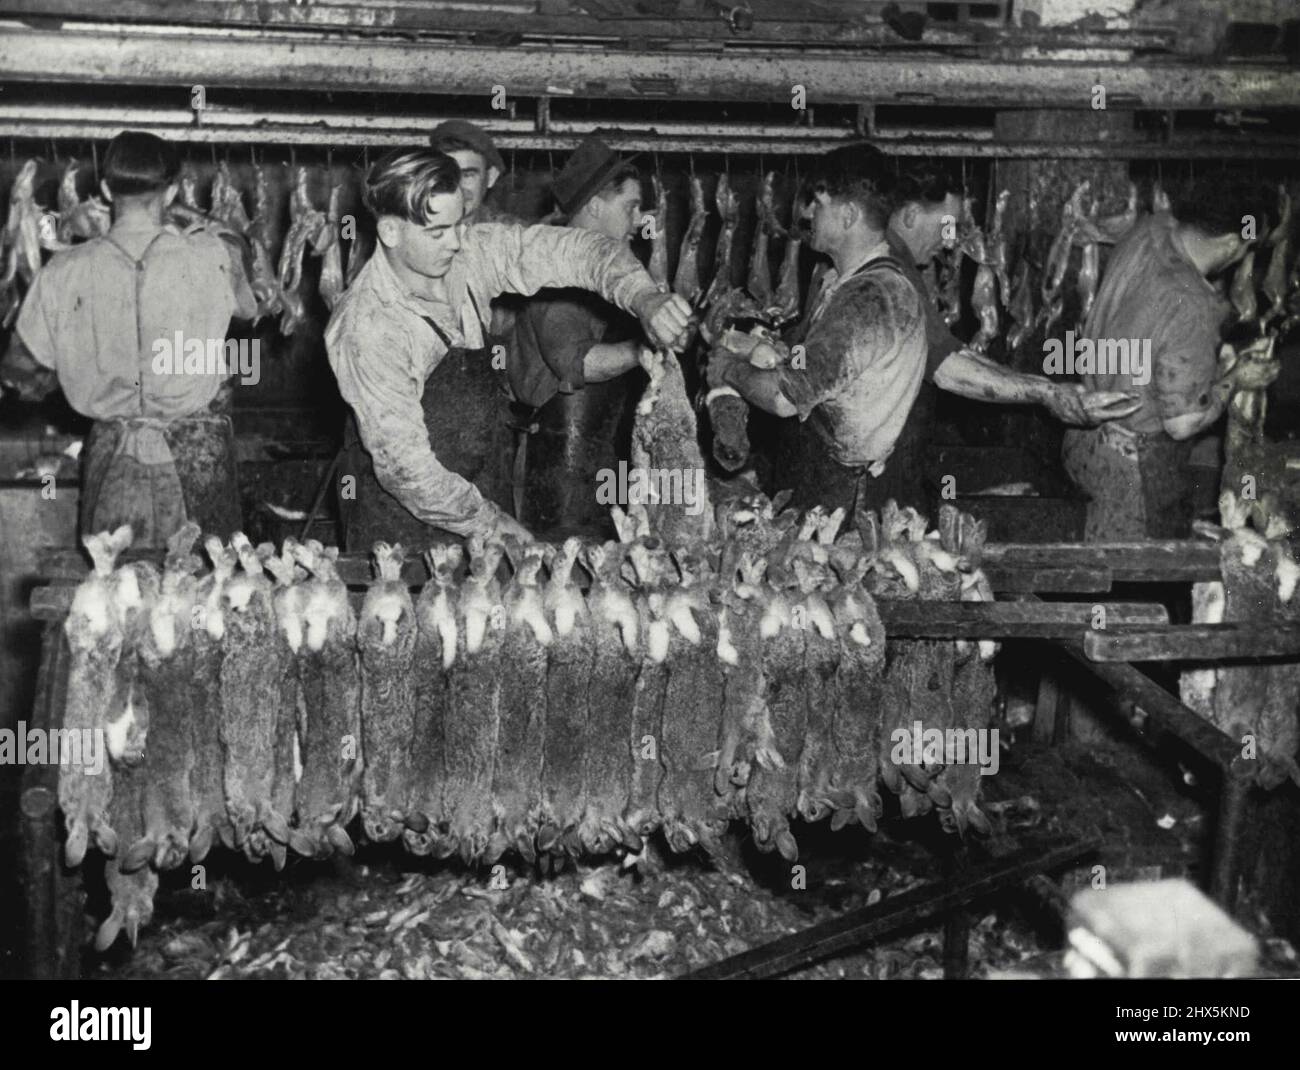 Con incredibile rapidità i pelatori 'pelare' conigli dopo che la testa e le gambe sono state rimosse. I trimmer puliscono le carcasse mentre passano sul nastro in movimento. Settembre 27, 1947. Foto Stock